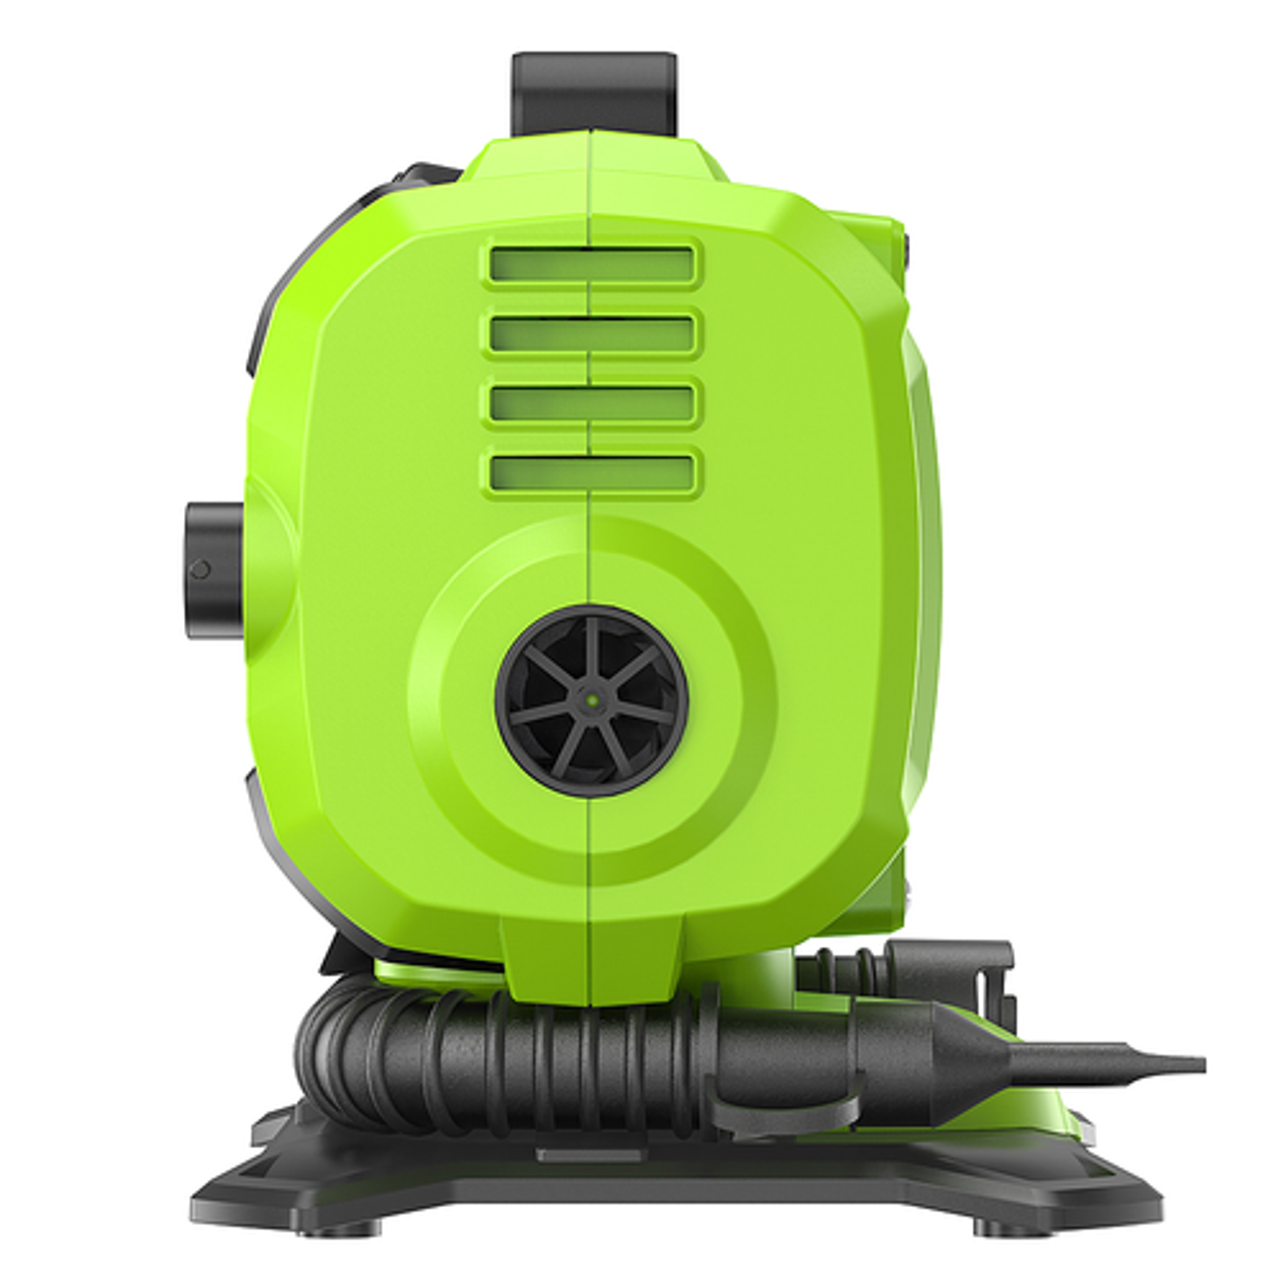 Greenworks - 24-volt Inflator (12V/24V), with (1) 2 Ah USB Battery, Charger - Green